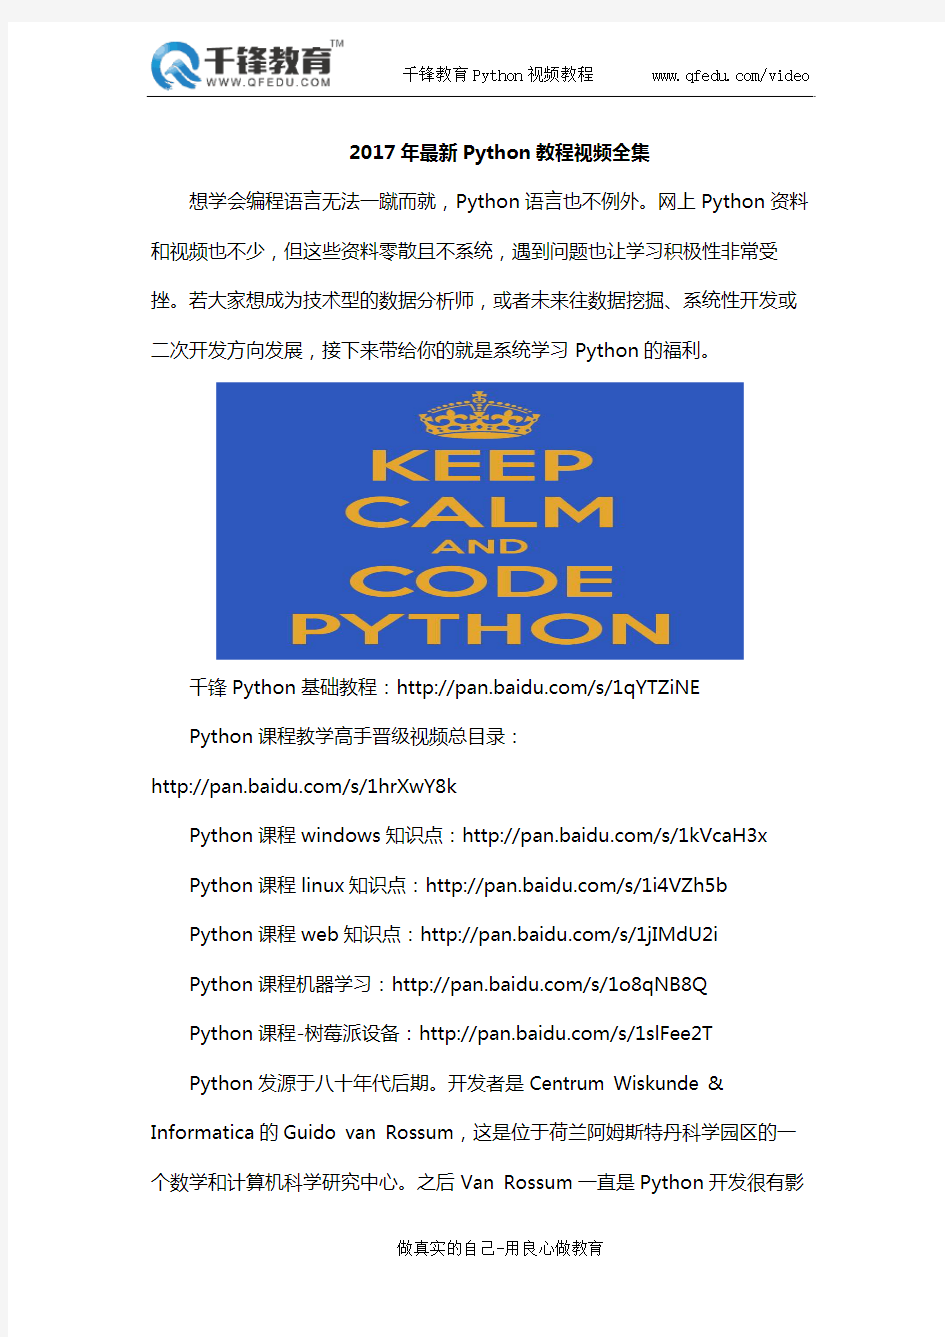 17年最新Python教程视频全集